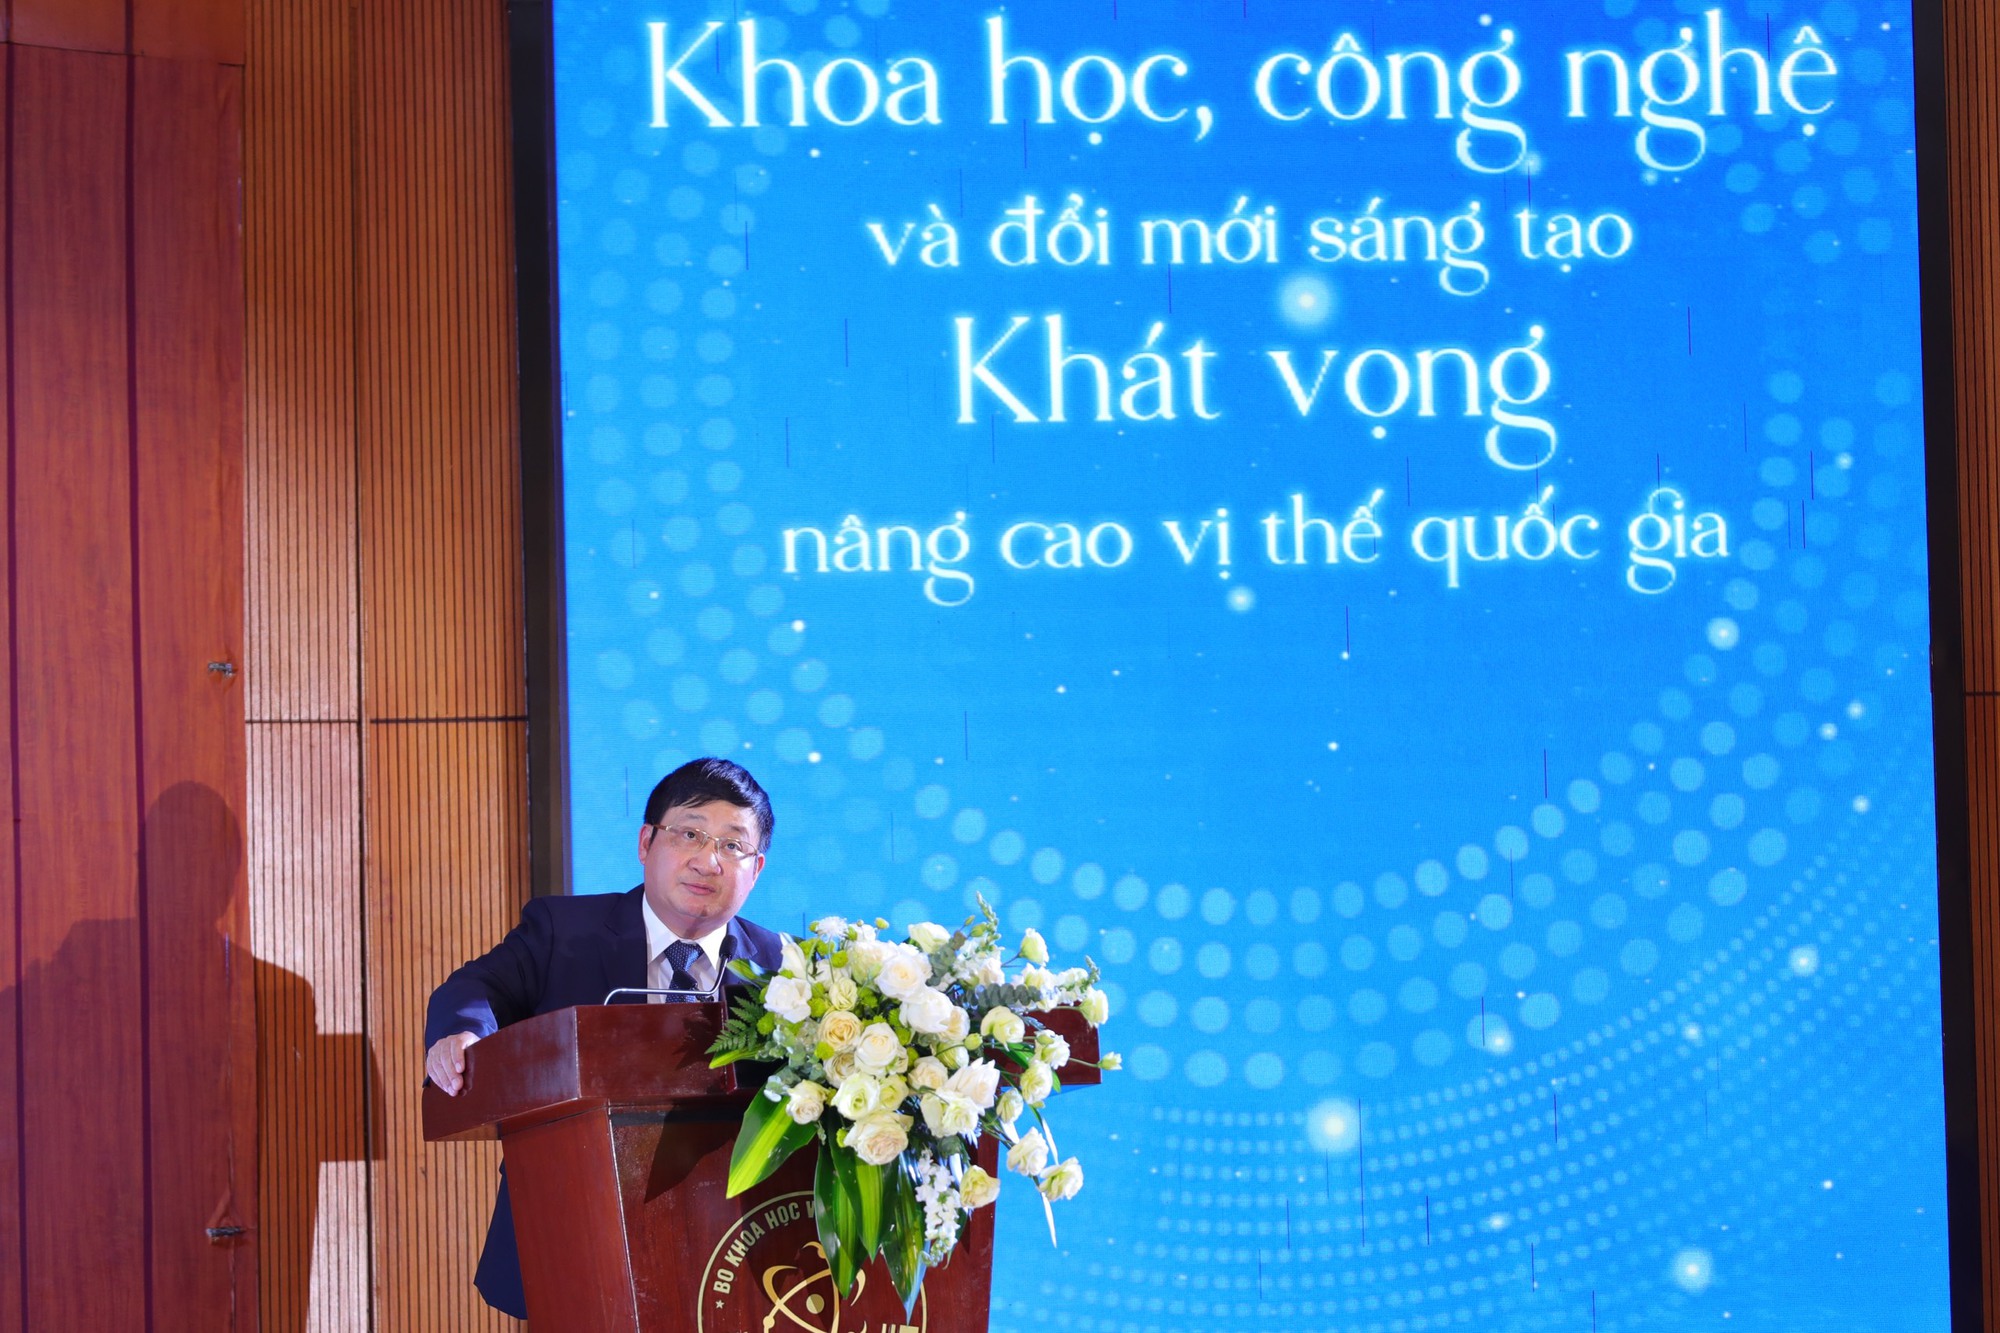 Chào mừng 60 năm ngày khoa học và công nghệ Việt Nam  - Ảnh 2.